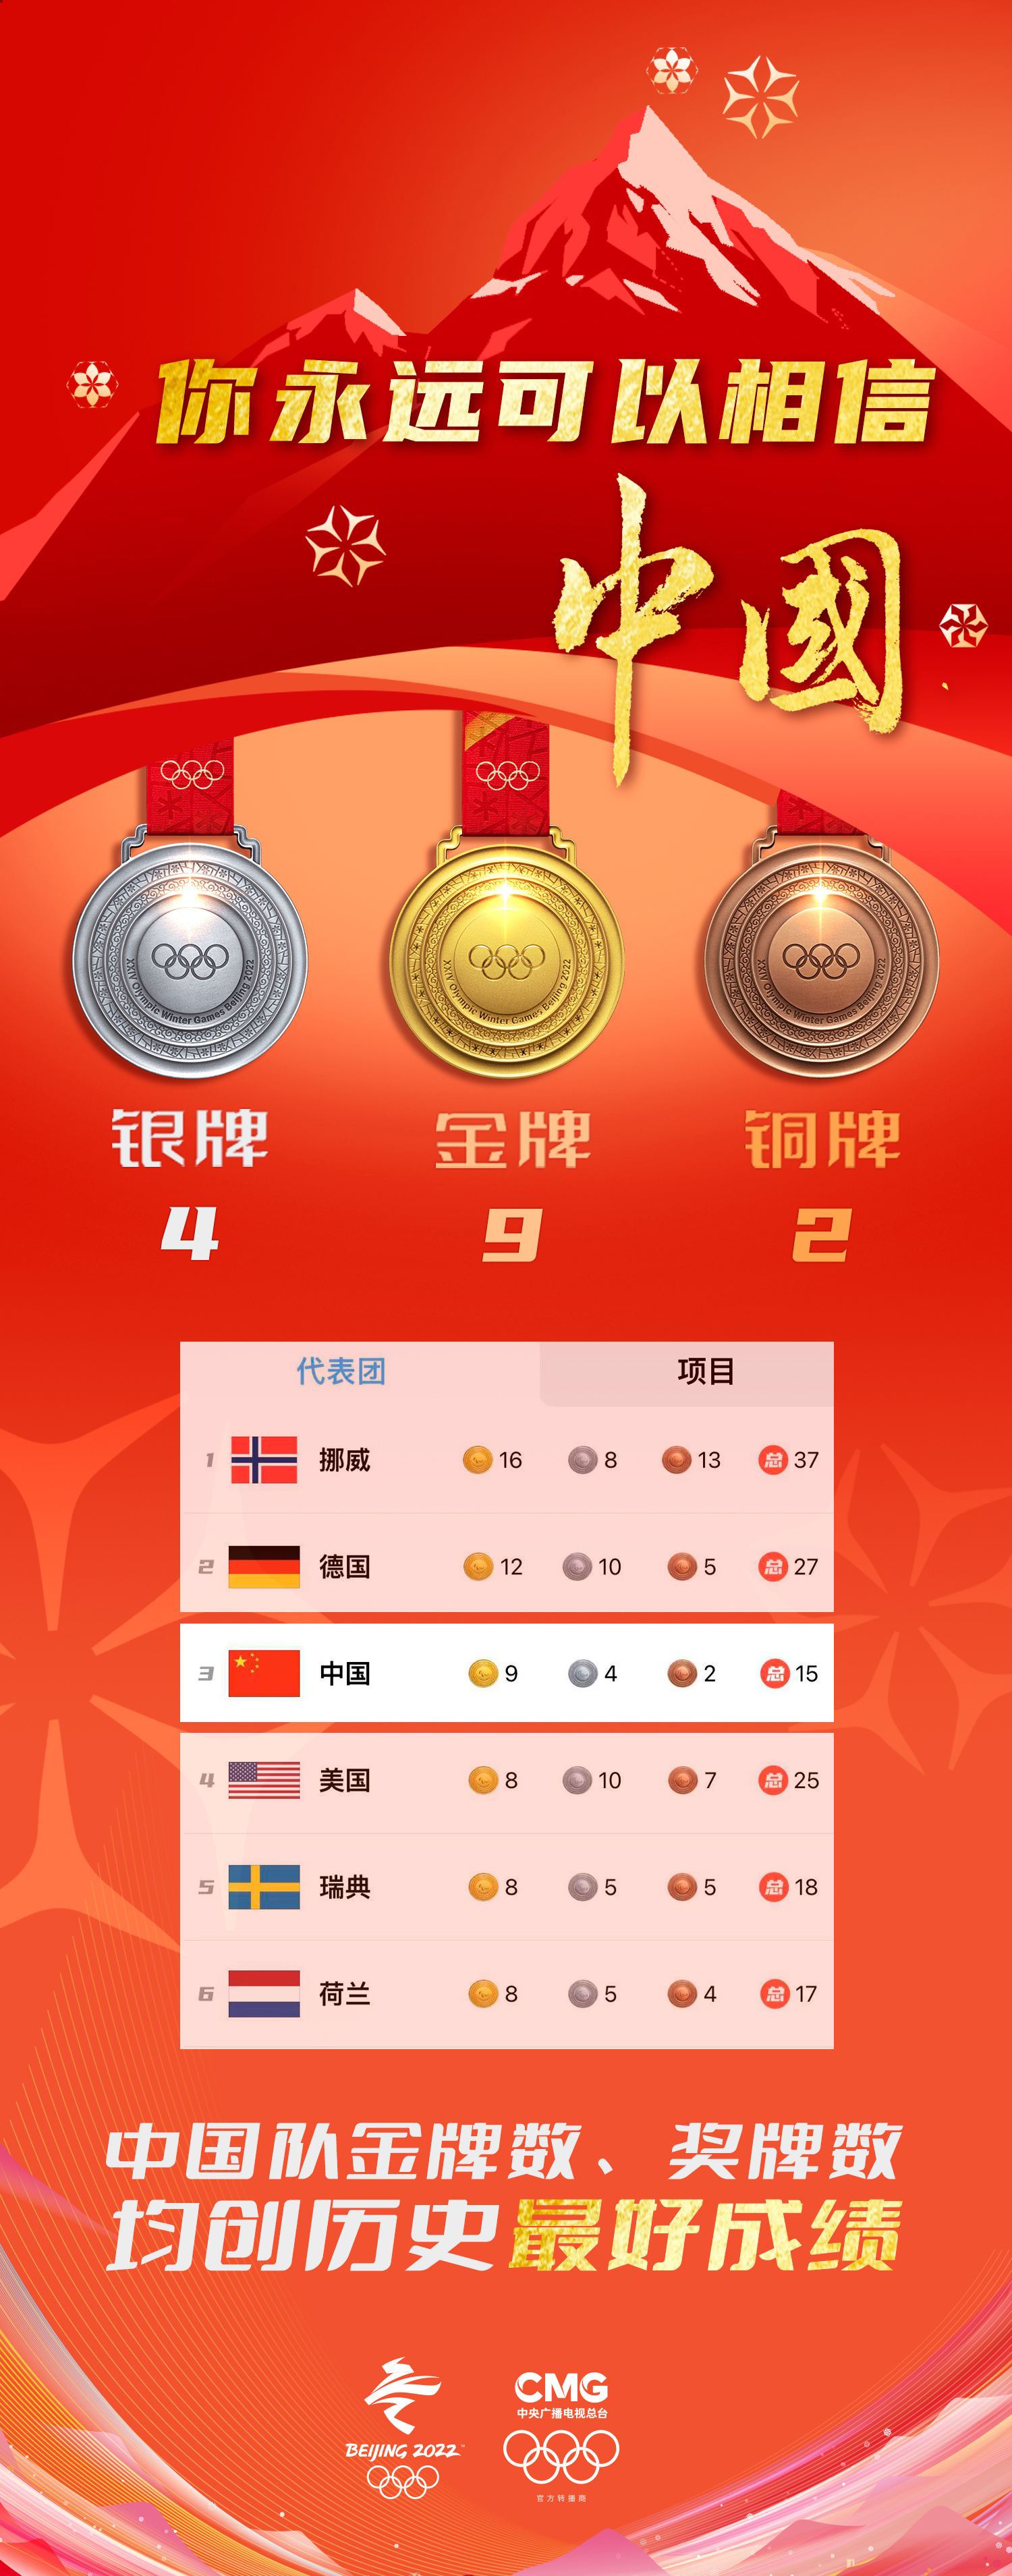 我想看中国奖牌榜图片